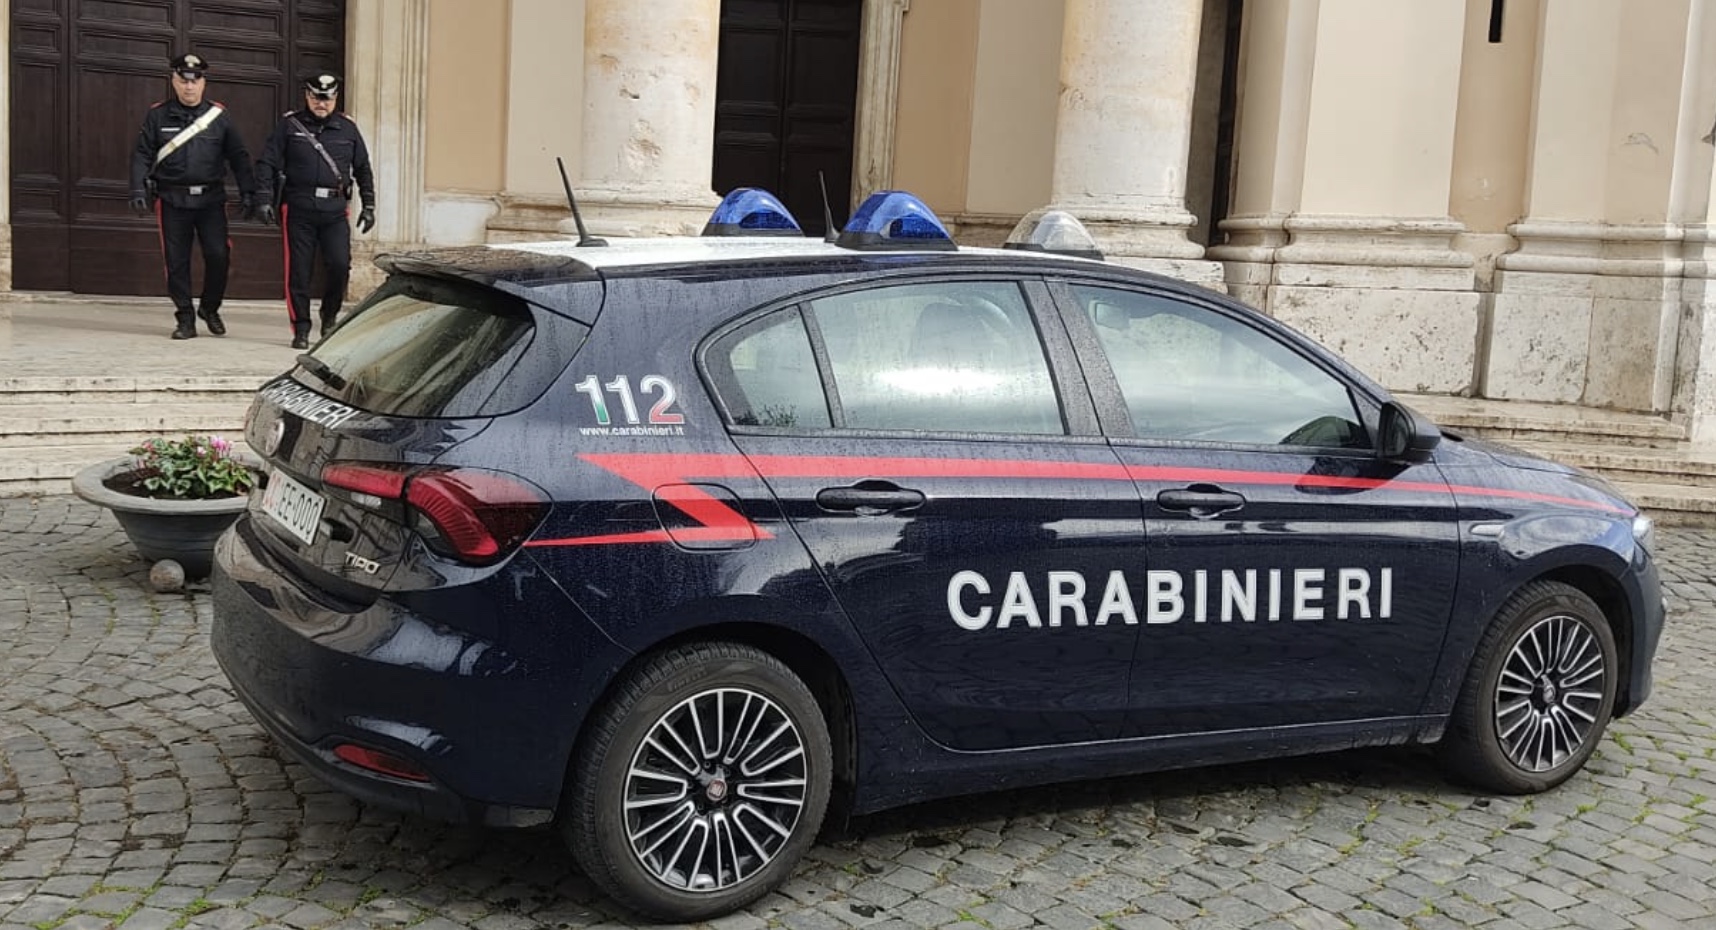 Percobaan pemerasan terhadap pastor paroki, ditangkap oleh Carabinieri: "Dia memasuki gereja dengan tabung gas dan korek api"